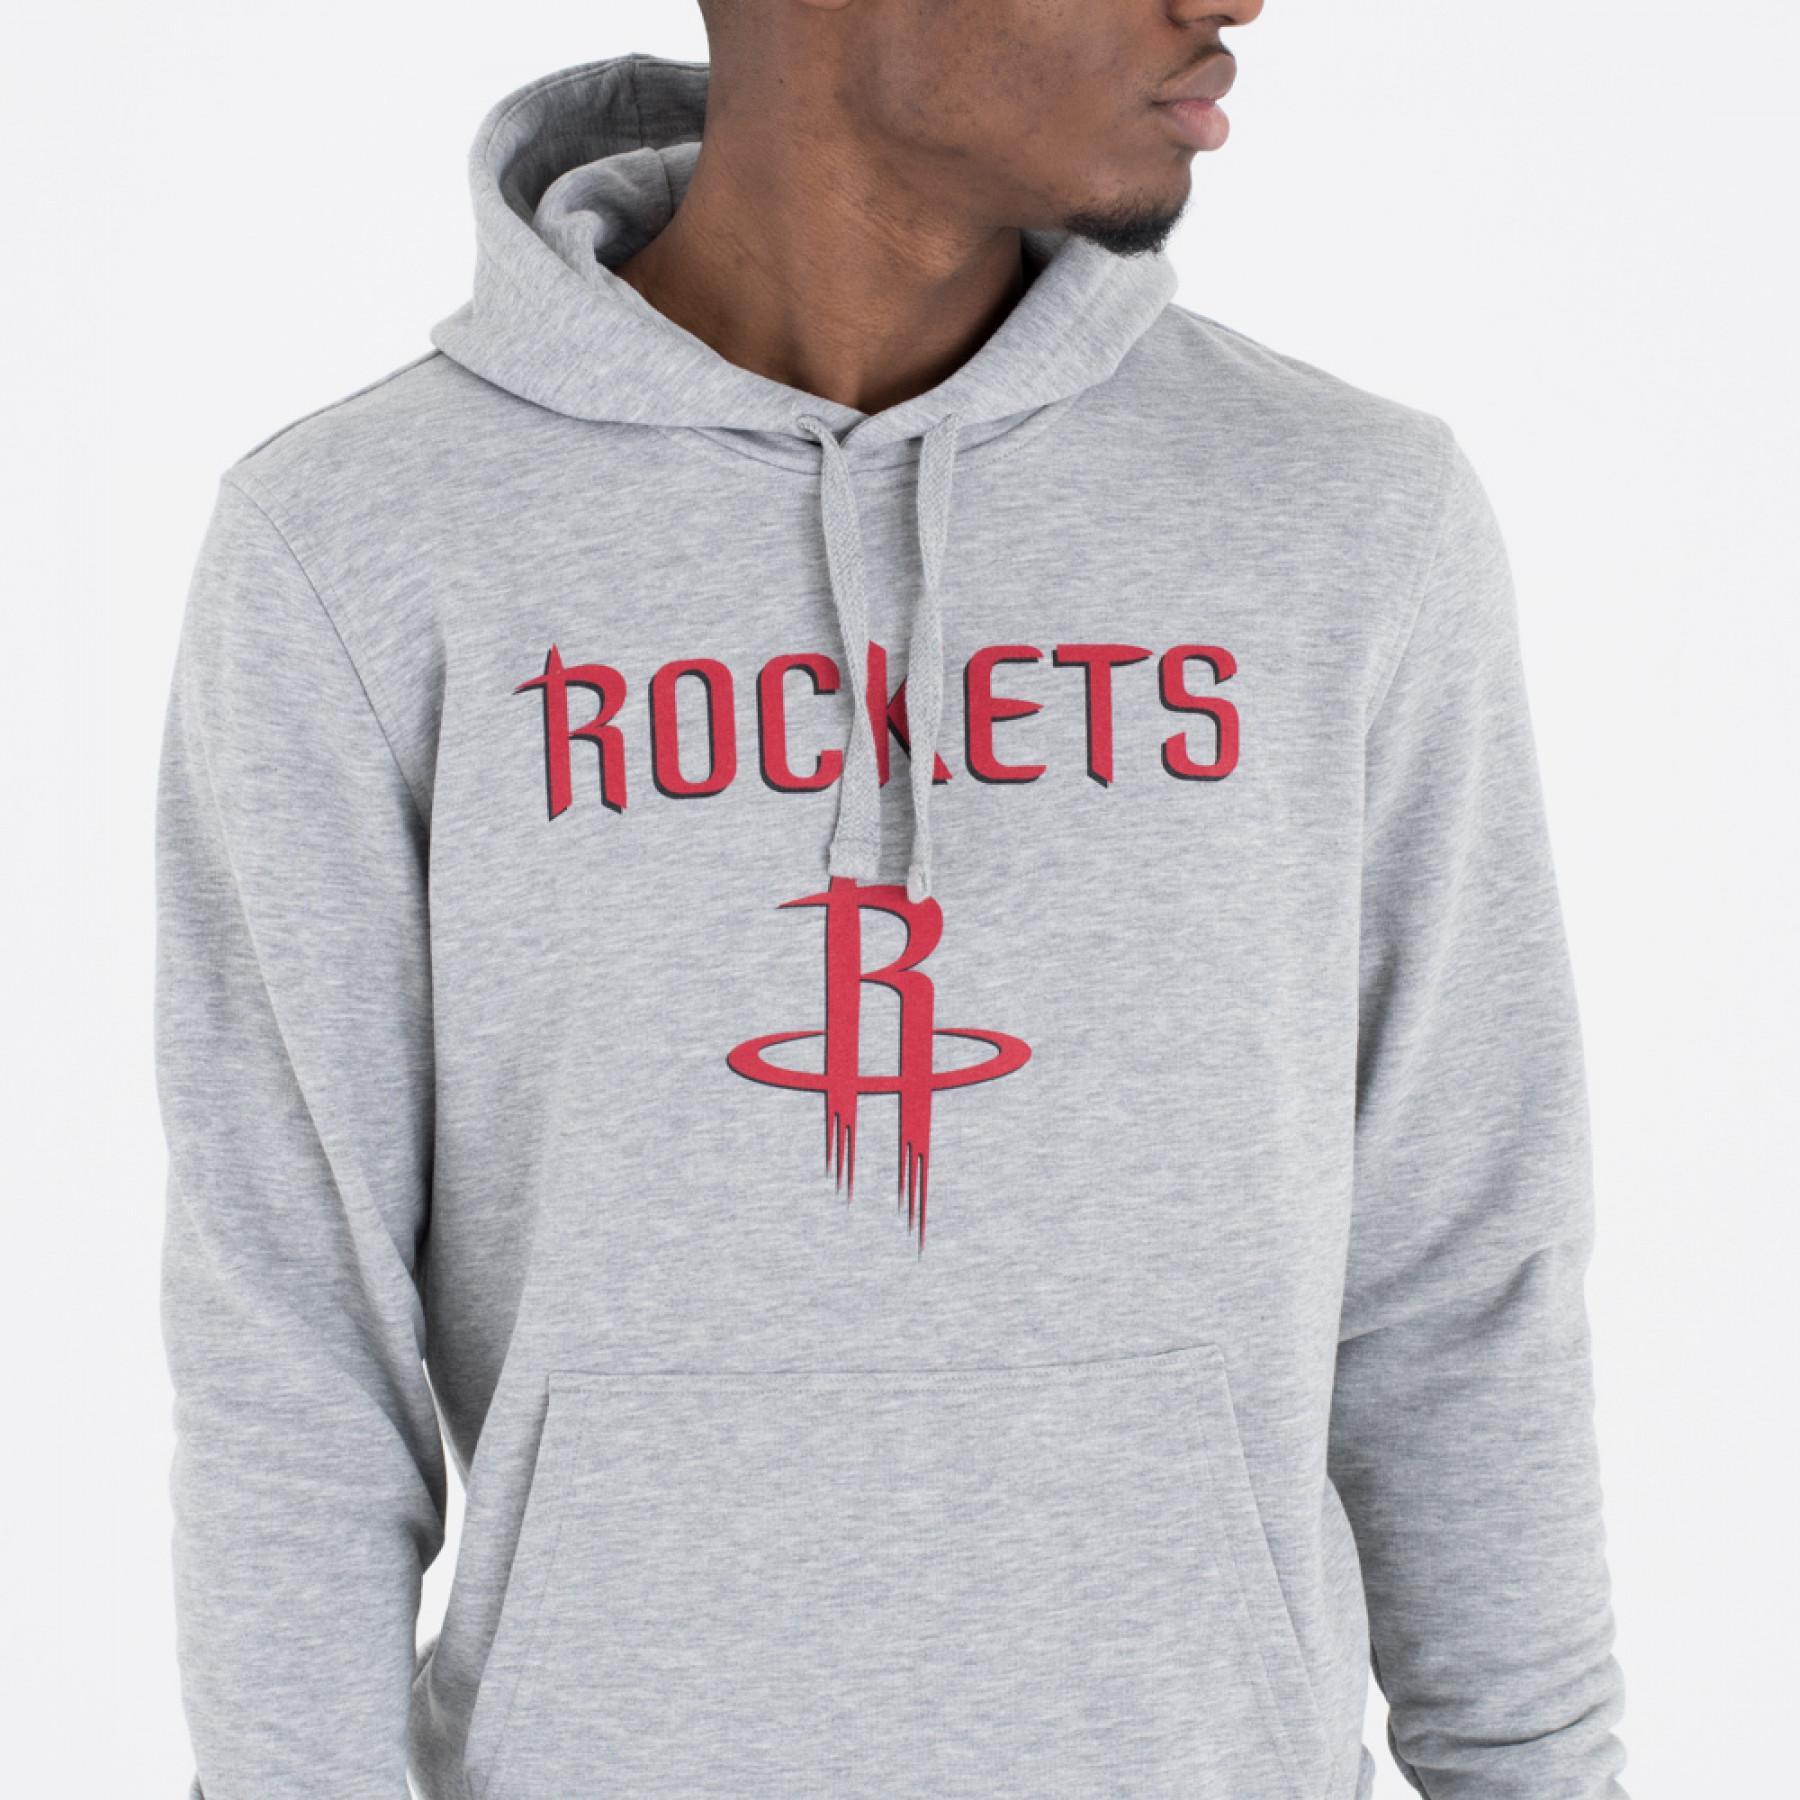 Sweat   capuche New Era  avec logo de l'équipe Houston Rockets